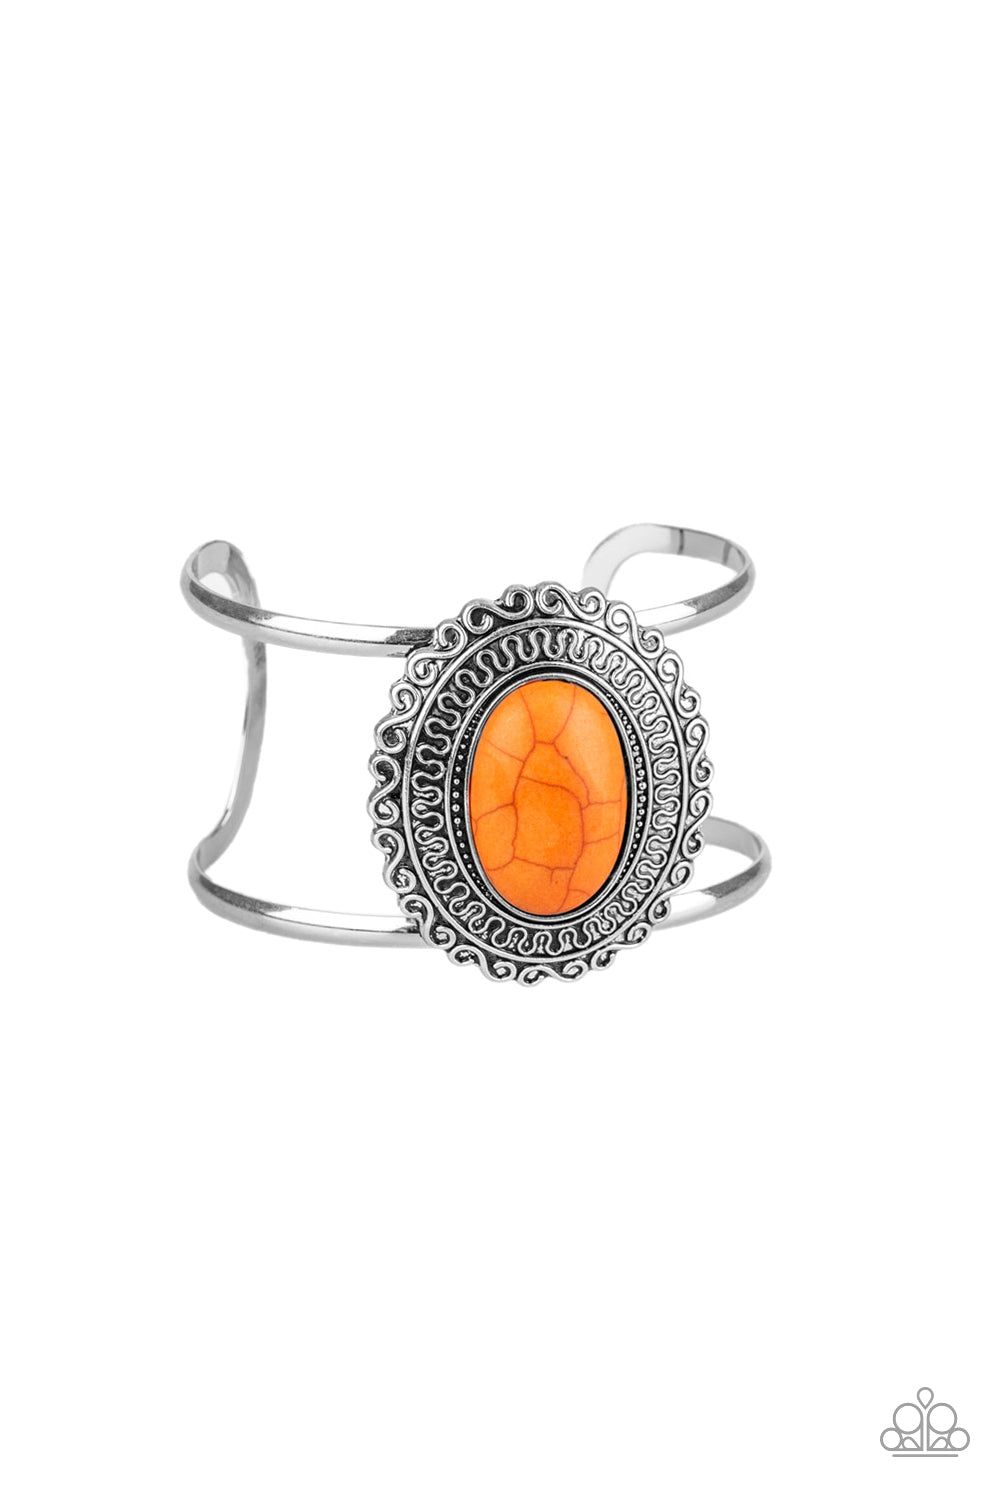 Paparazzi Extra EMPRESS-ive - Orange Stone - Silver Cuff Bracelet - $5 Jewelry With Ashley Swint